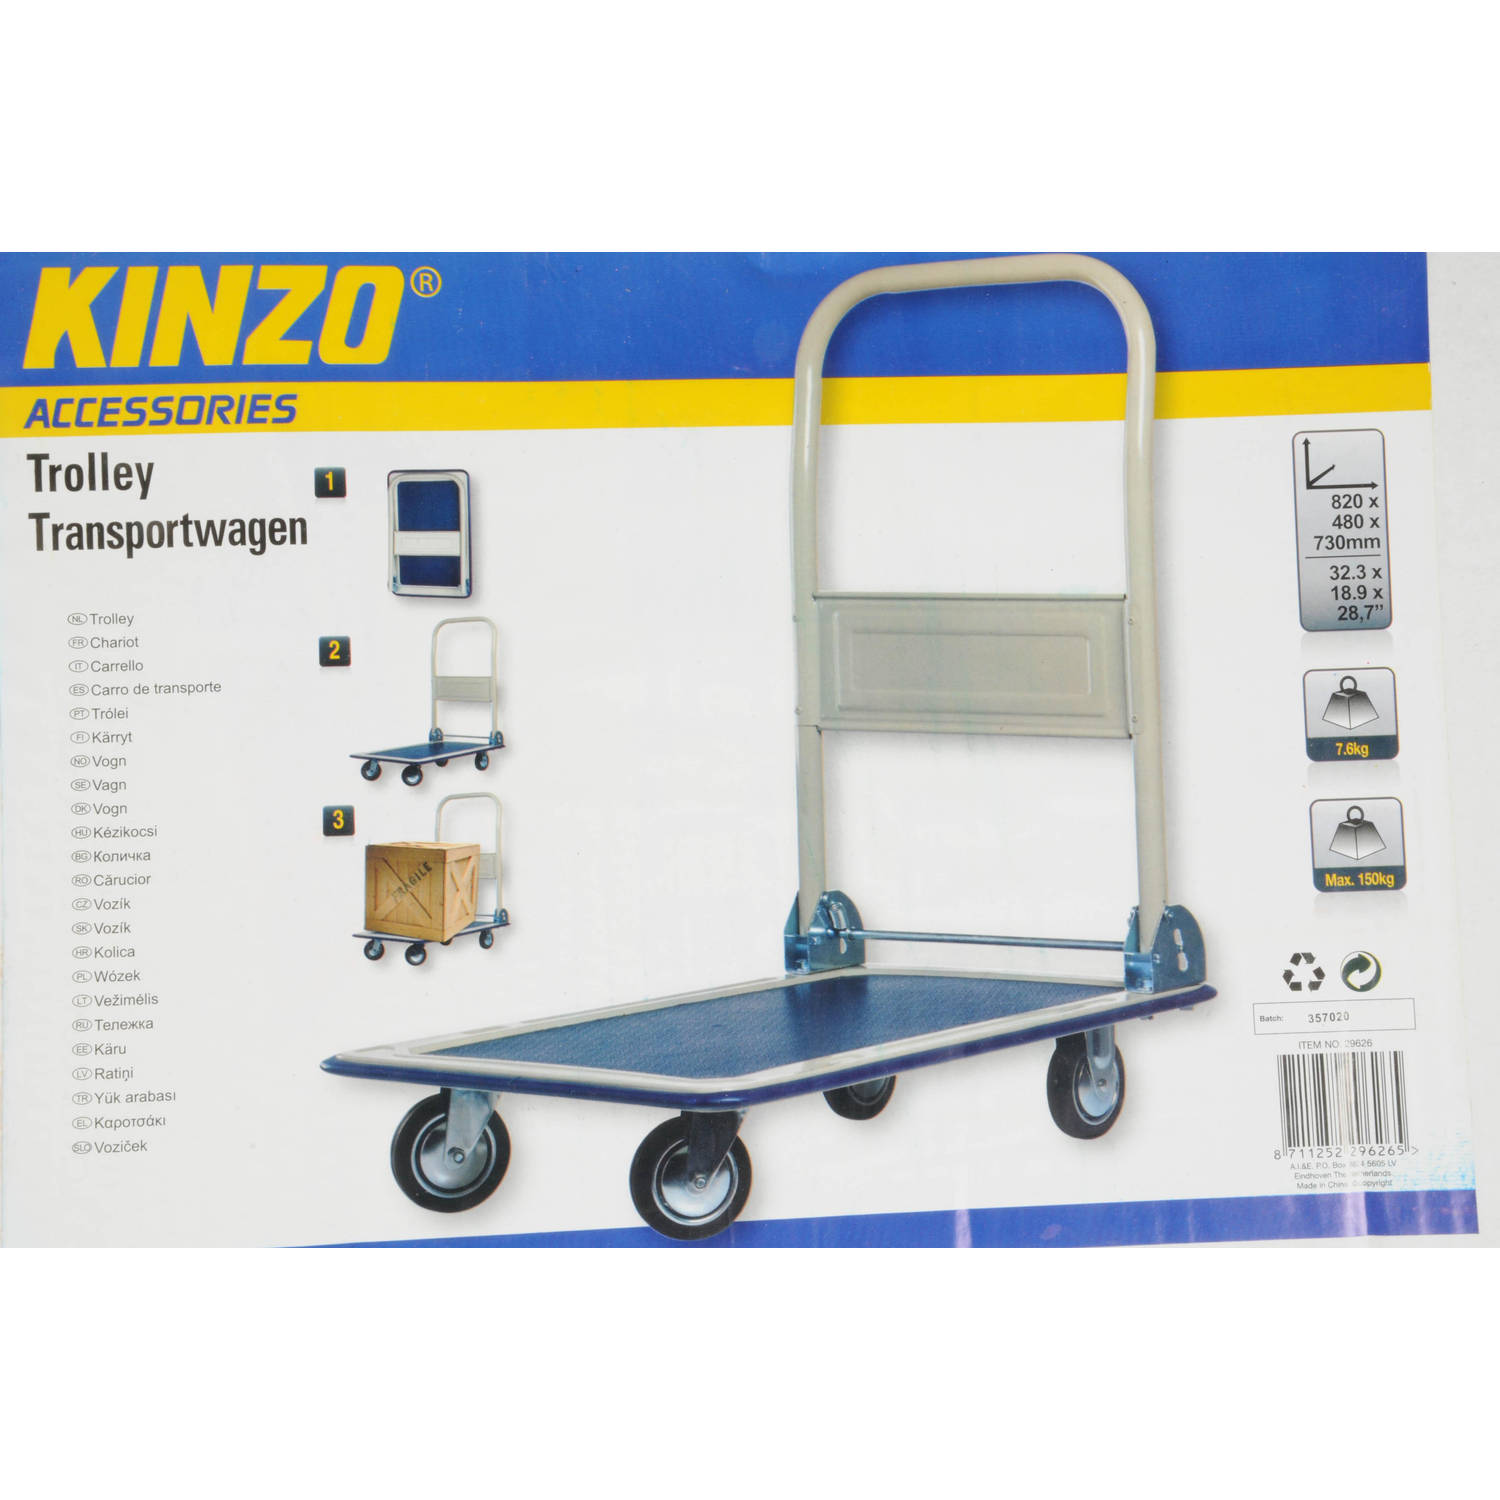 Kinzo trolley